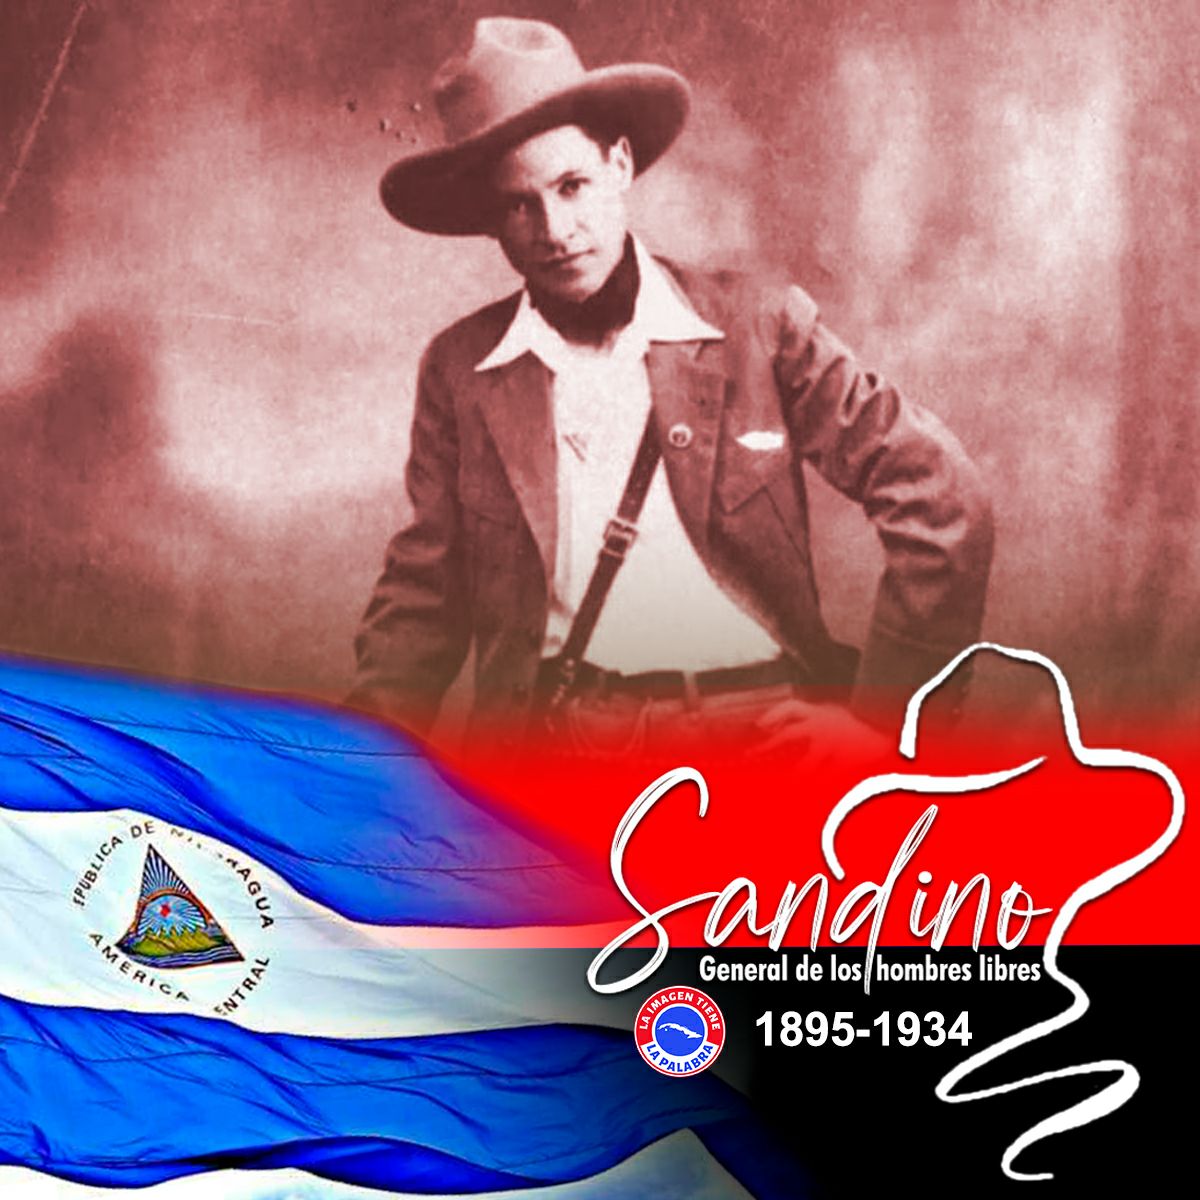 Augusto C. Sandino, “El General de Hombres Libres”  es símbolo y bandera de los que luchan en defensa de los pueblos a ser libres y contra el imperialismo. 

#90SandinoSiempreMásAllá
#DeZurdaTeam 🐊
#AmigosDeFidel